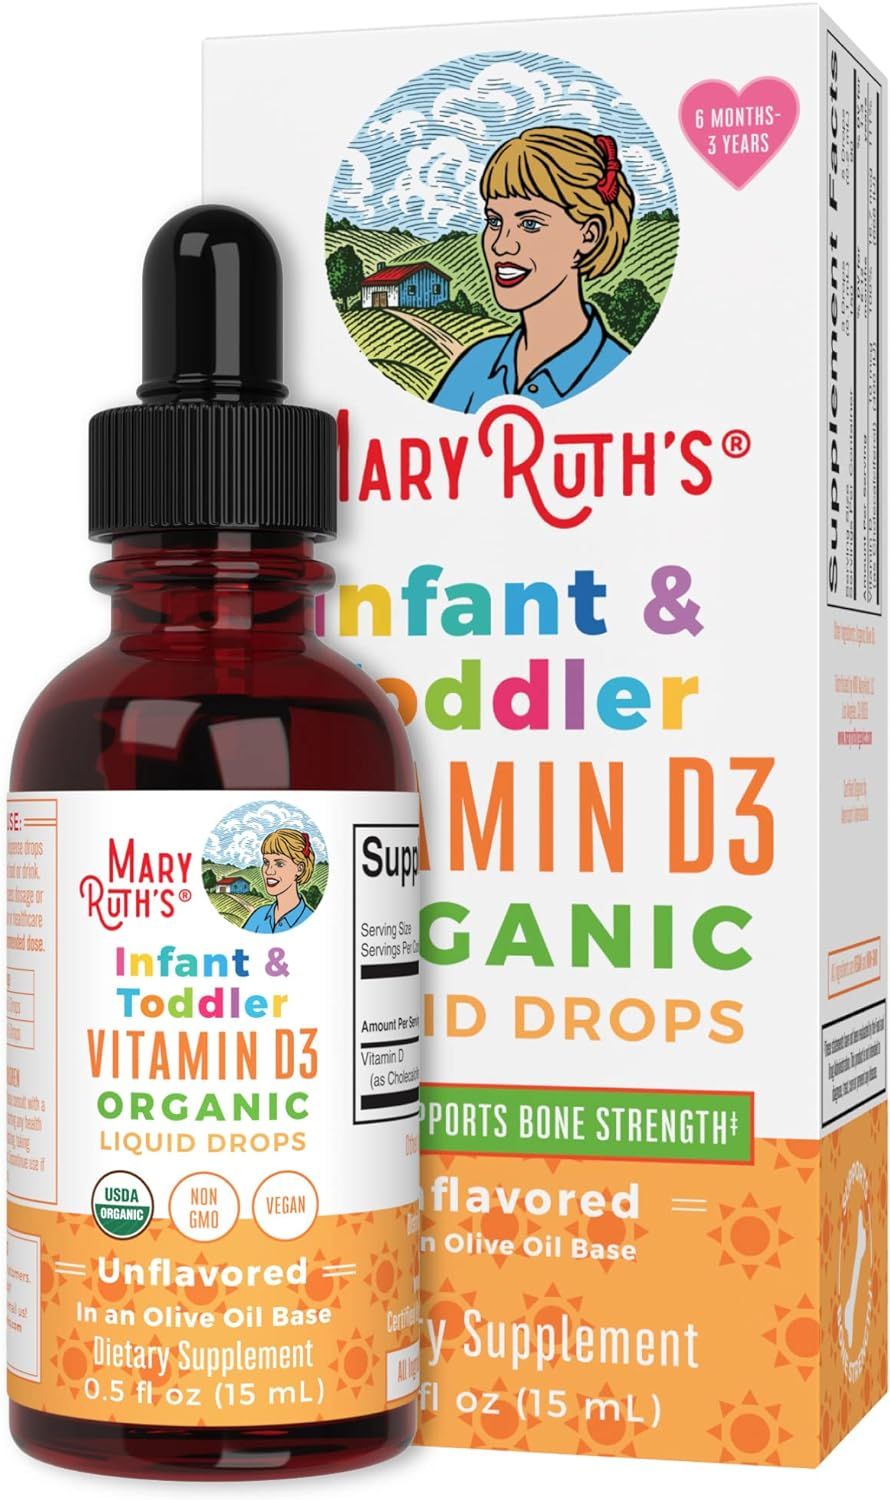 MaryRuth Organics Vitamin D3 Liquid Drops for Infants & Toddler, USDA Organic Liquid Vitamin D Sp... | Amazon (US)